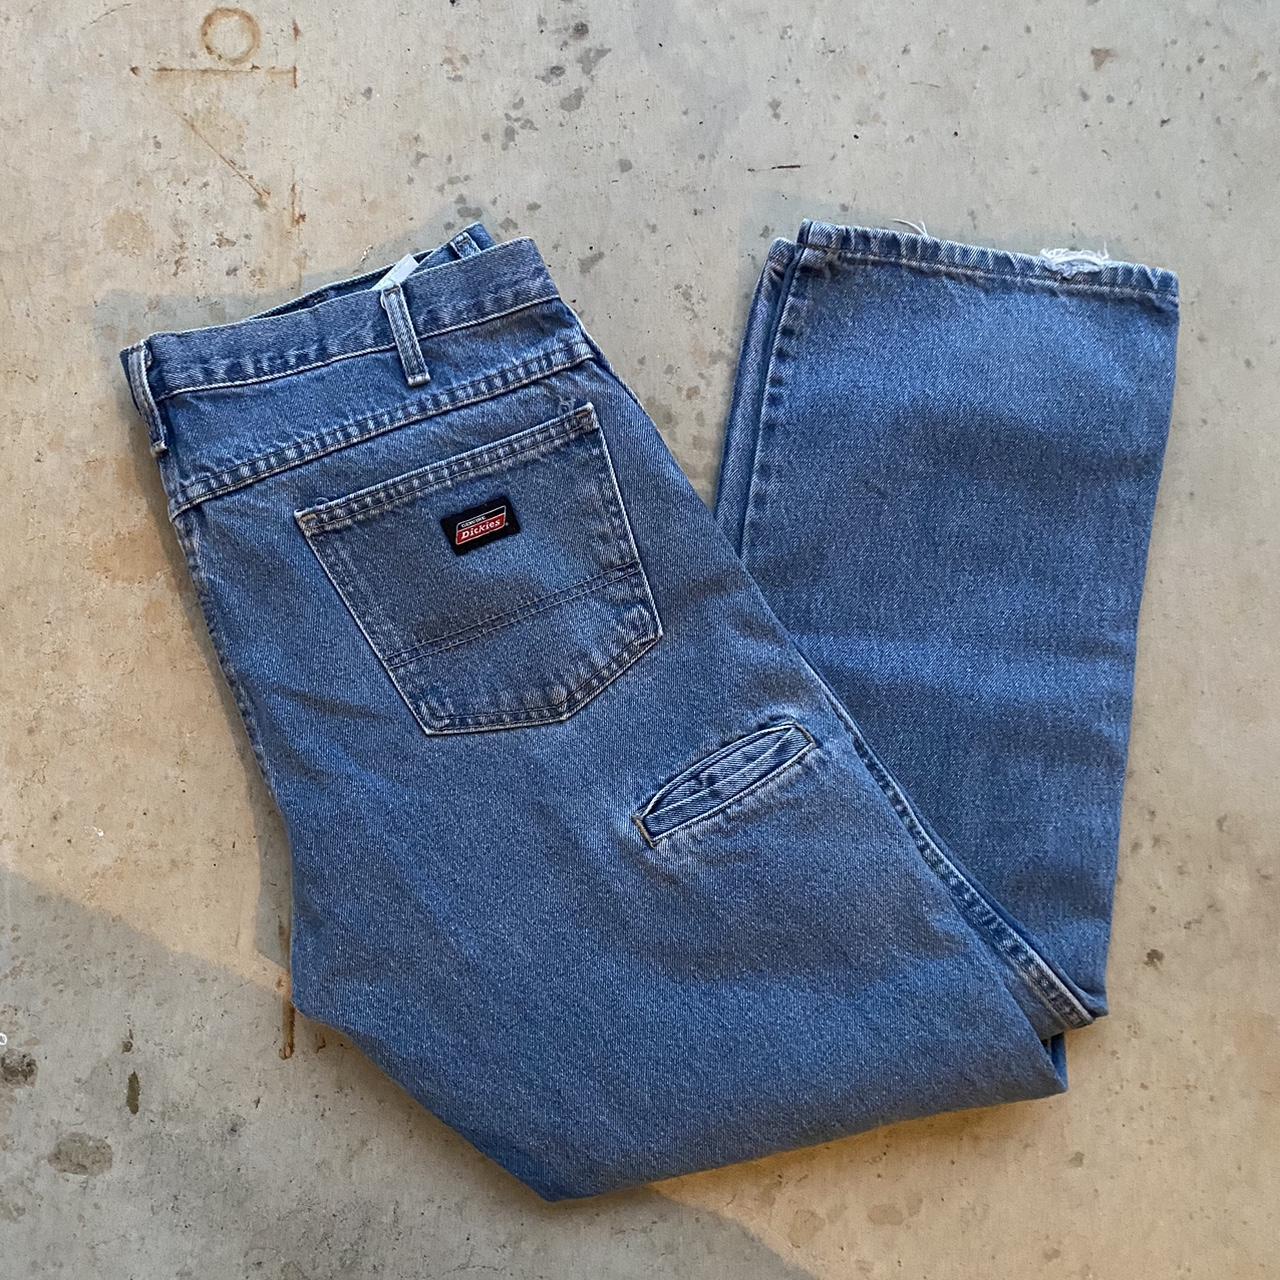 Vintage Dickies jeans 36x32 Nice color #dickies... - Depop